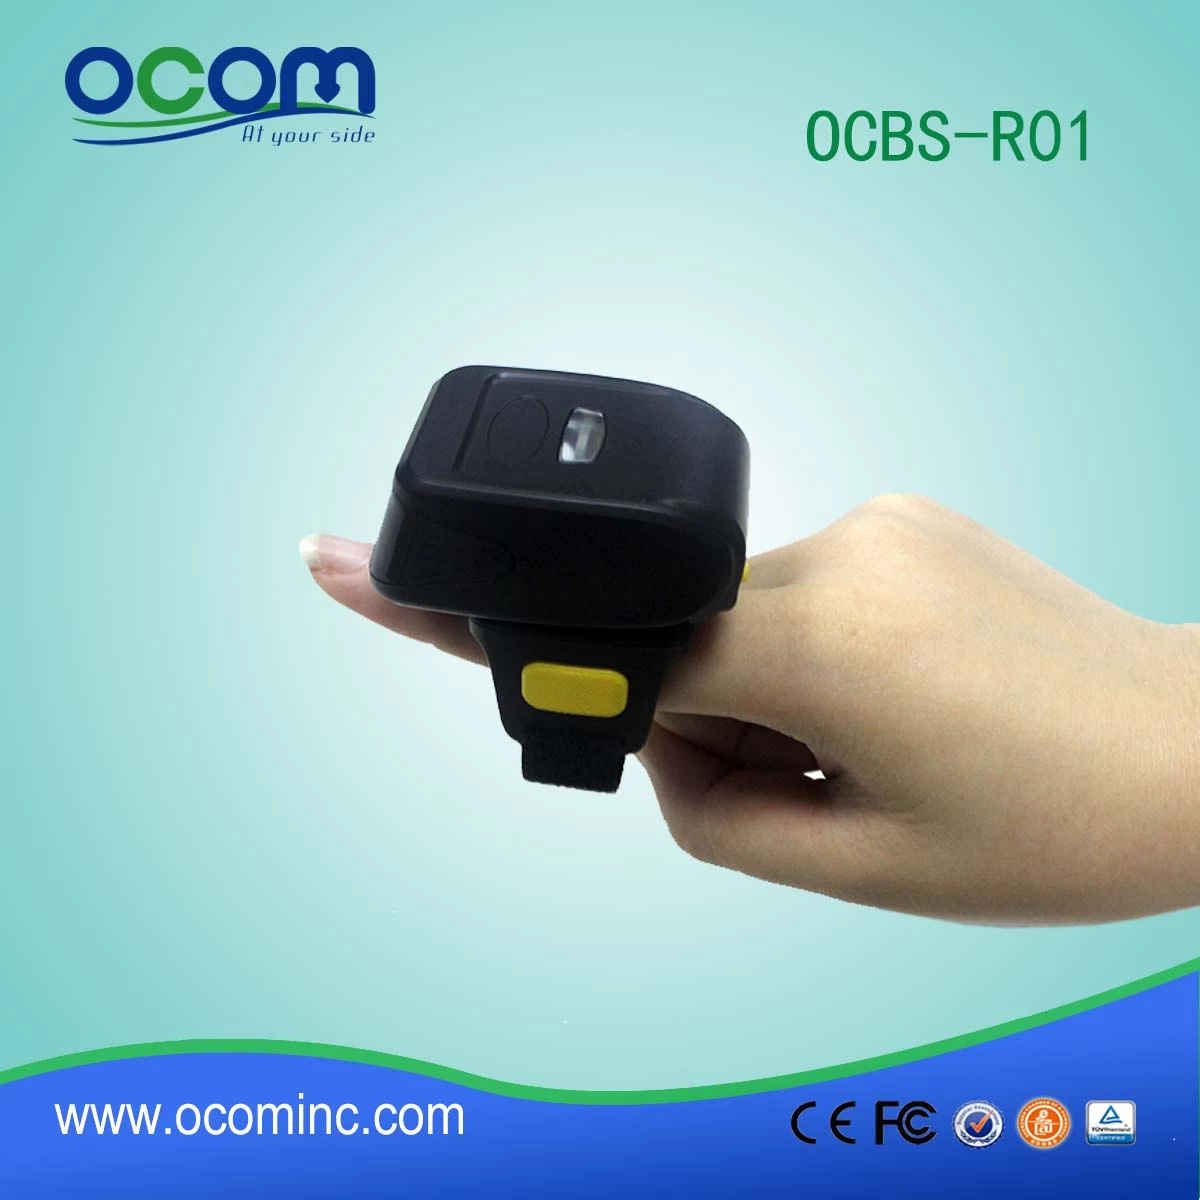 OCBS-R01 1D wireless bluetooth barcode scanner